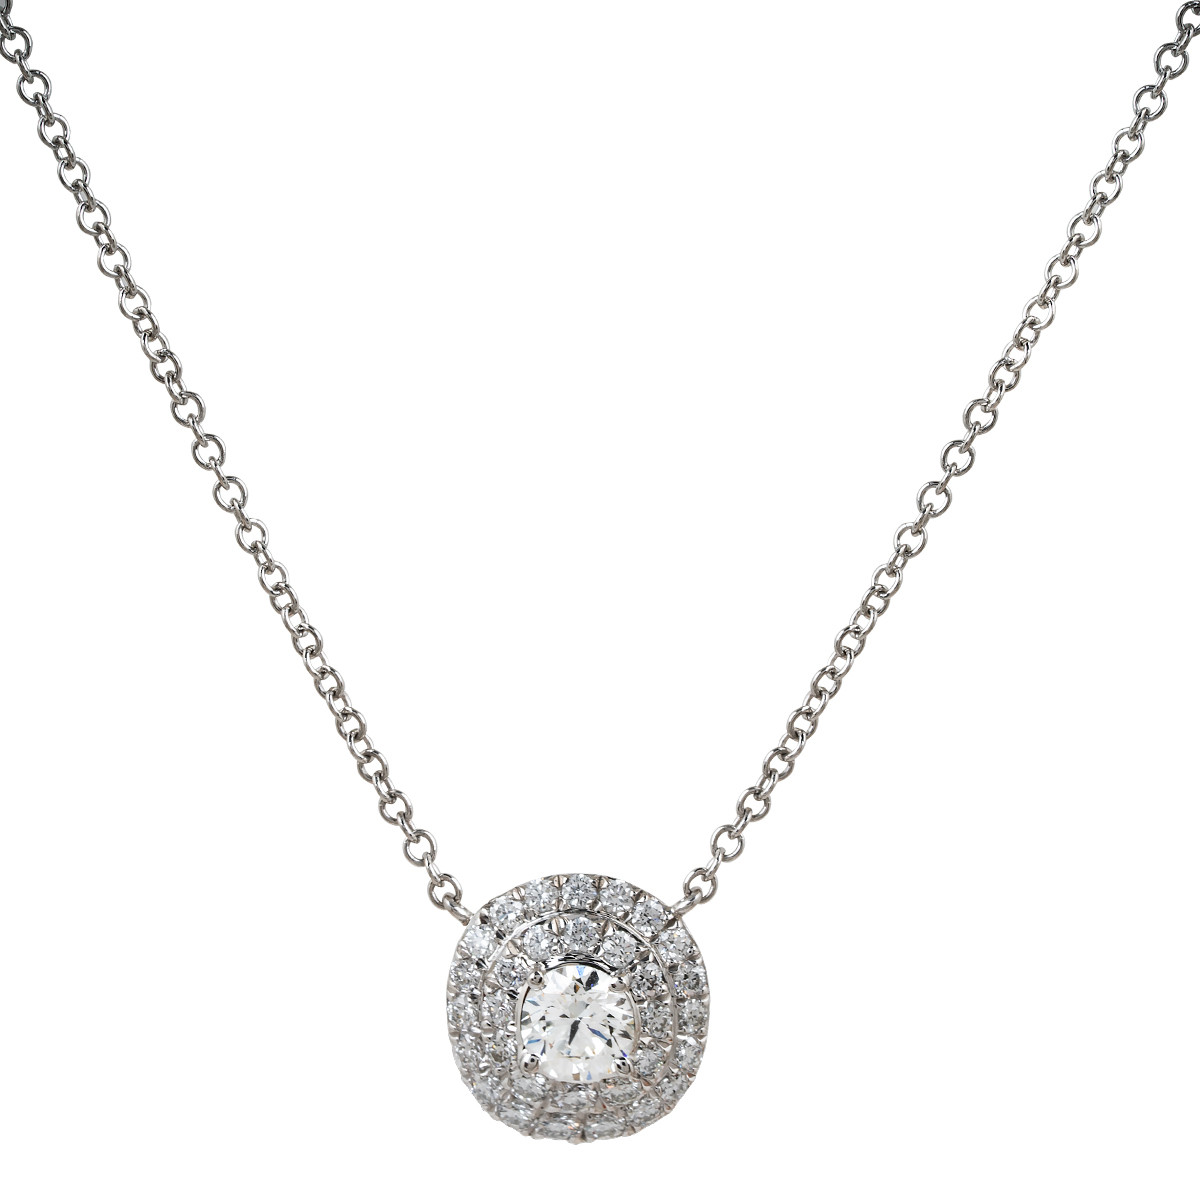 Tiffany Soleste Pendant in Platinum with Round Brilliant Diamonds